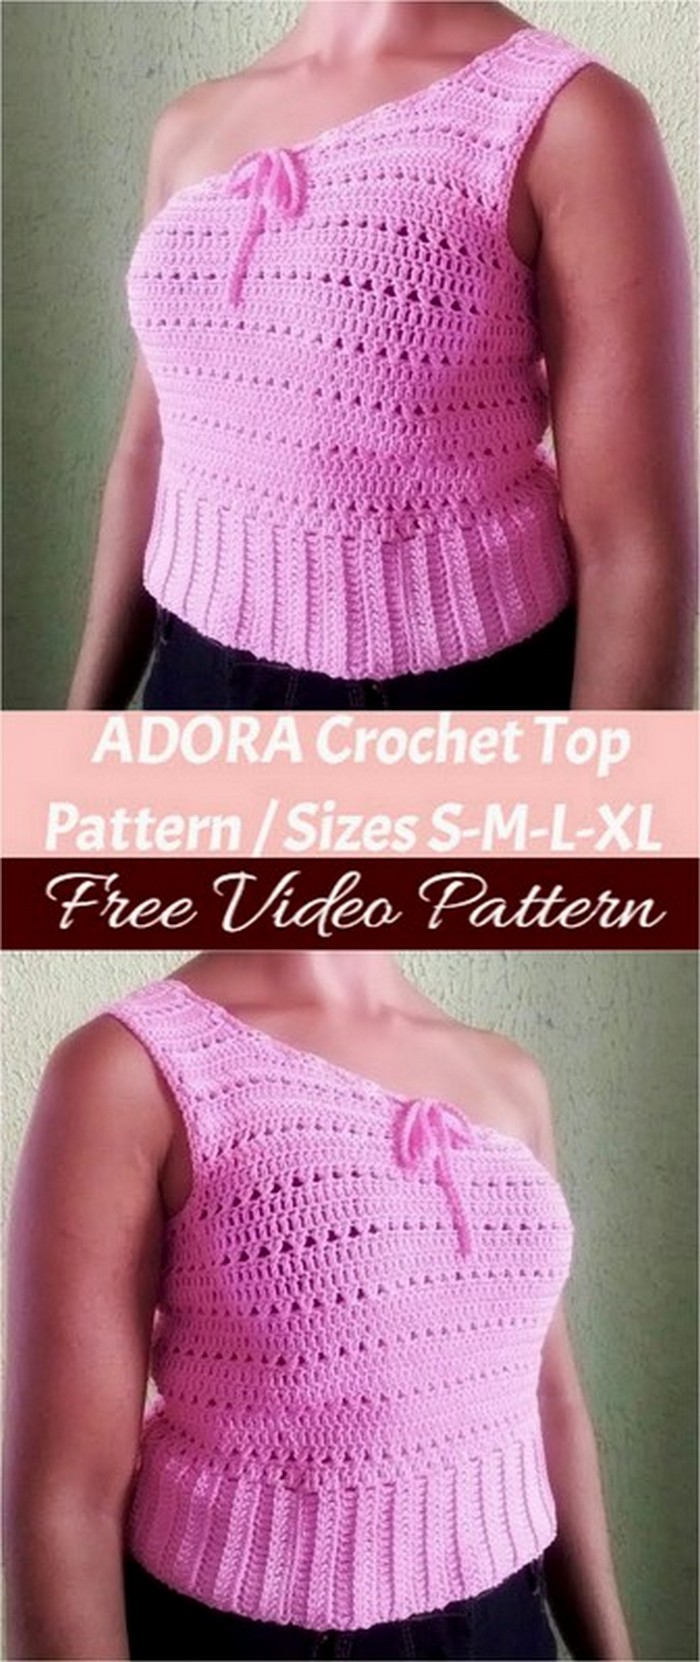 ADORA Crochet Top Pattern Sizes S-M-L-XL